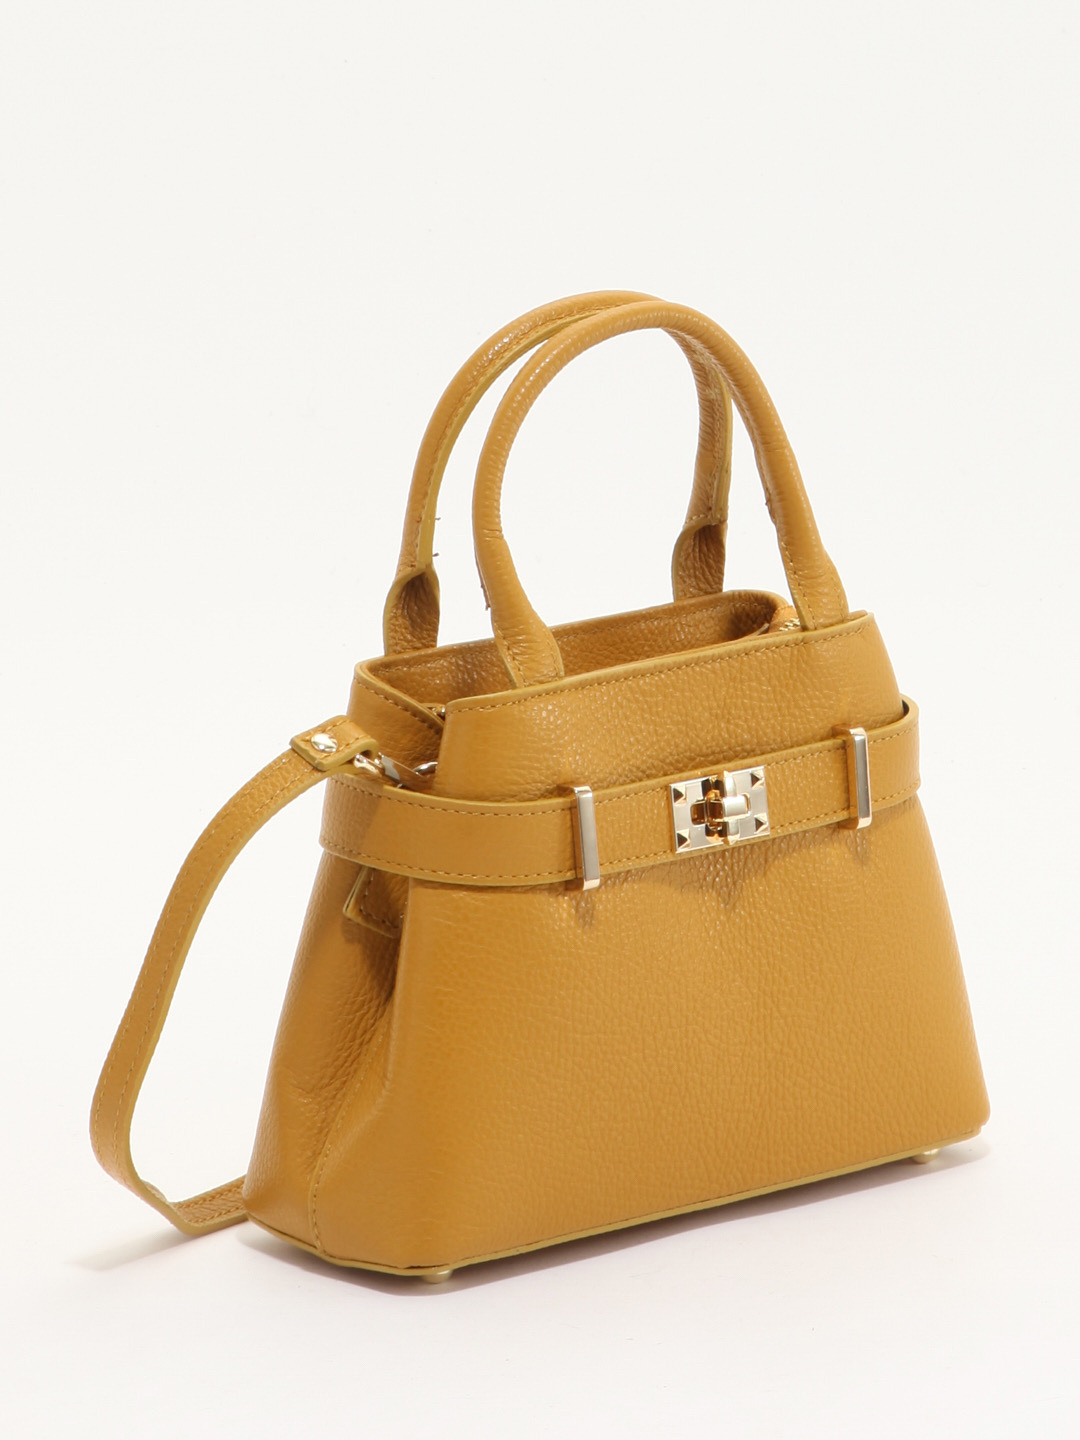 ケリーデザインバッグ 黄色 イタリアで購入